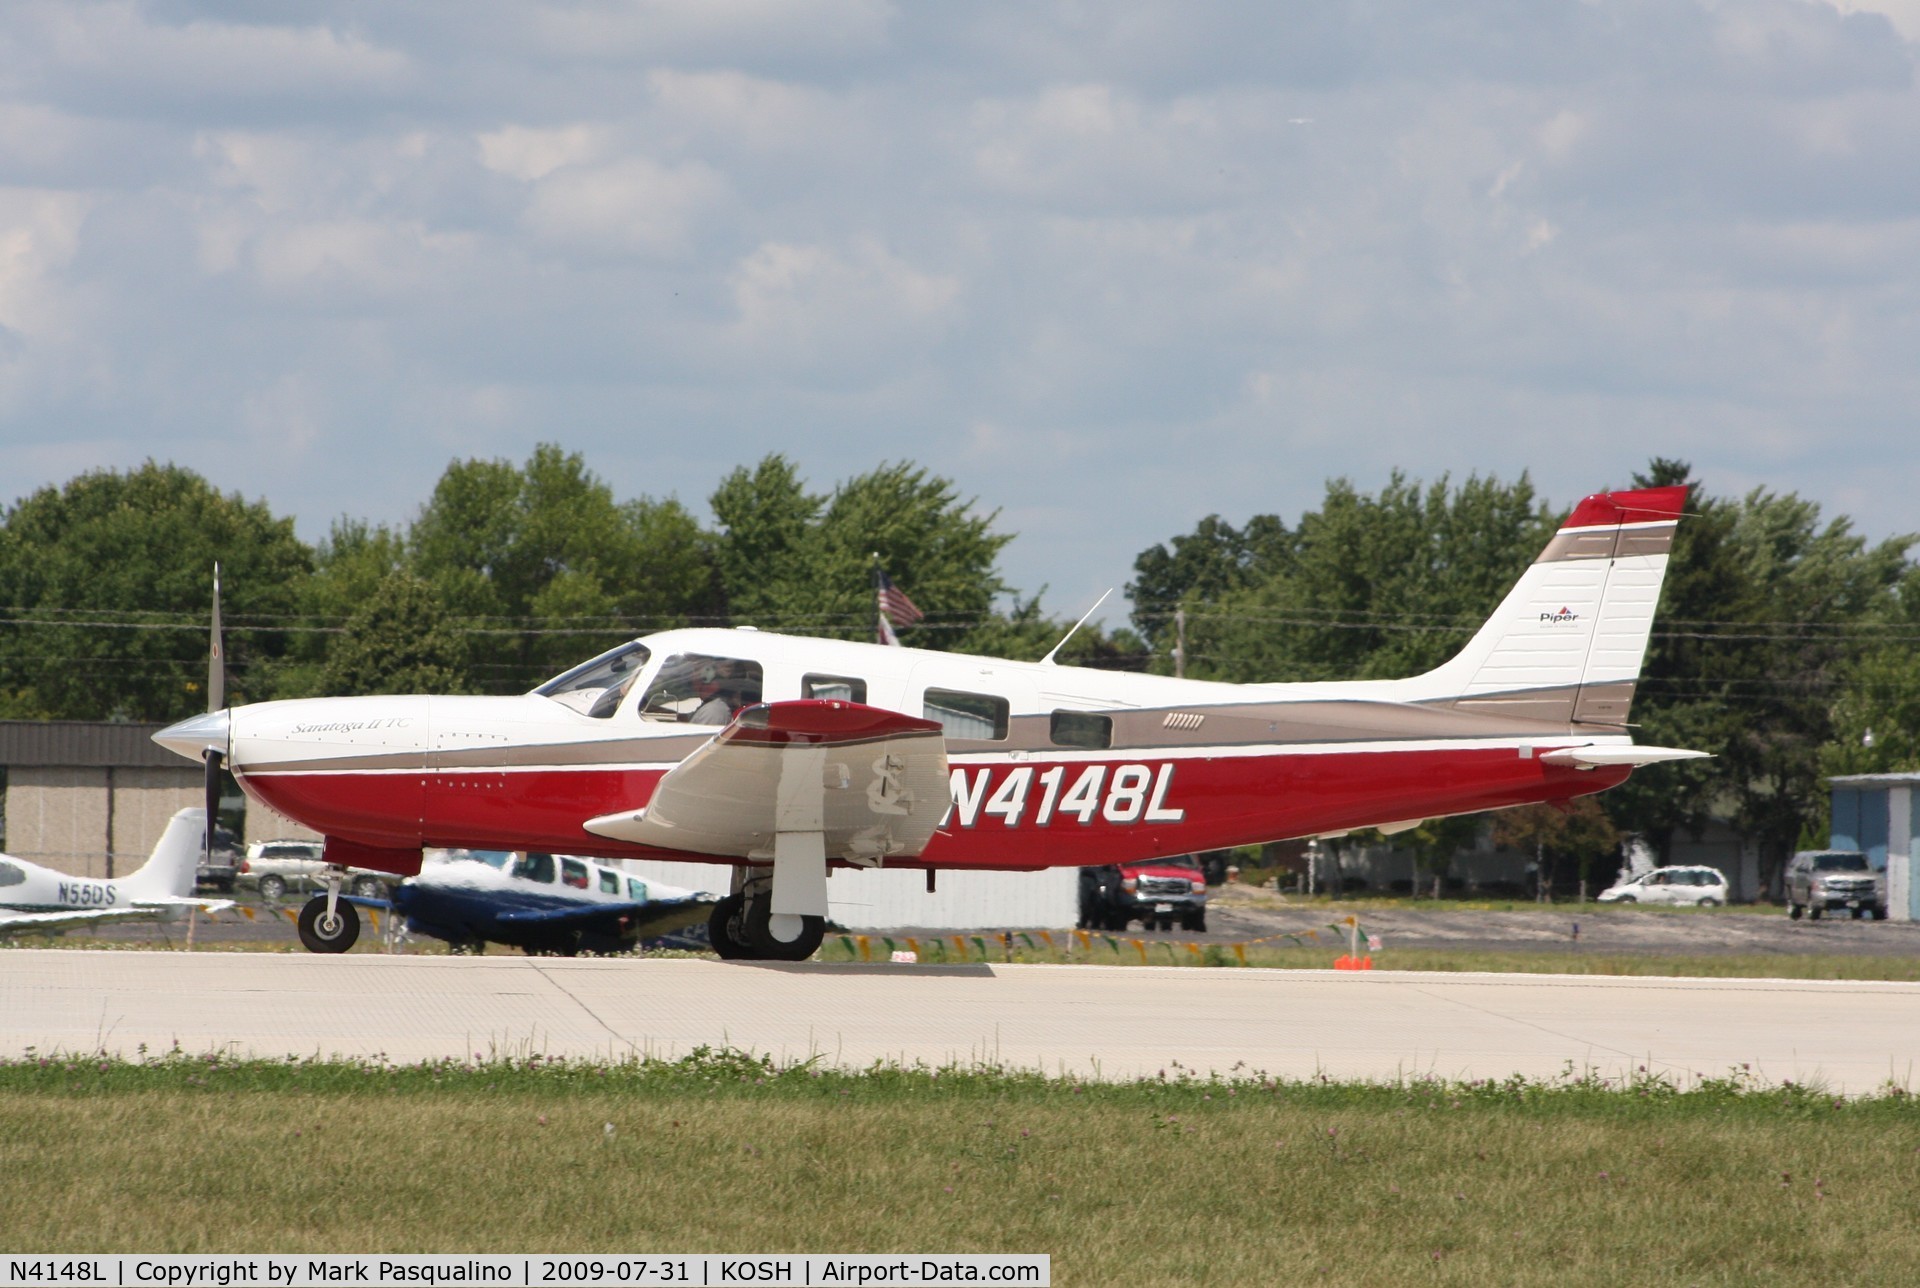 N4148L, 1999 Piper PA-32R-301T Turbo Saratoga C/N 3257084, Piper PA-32R-301T